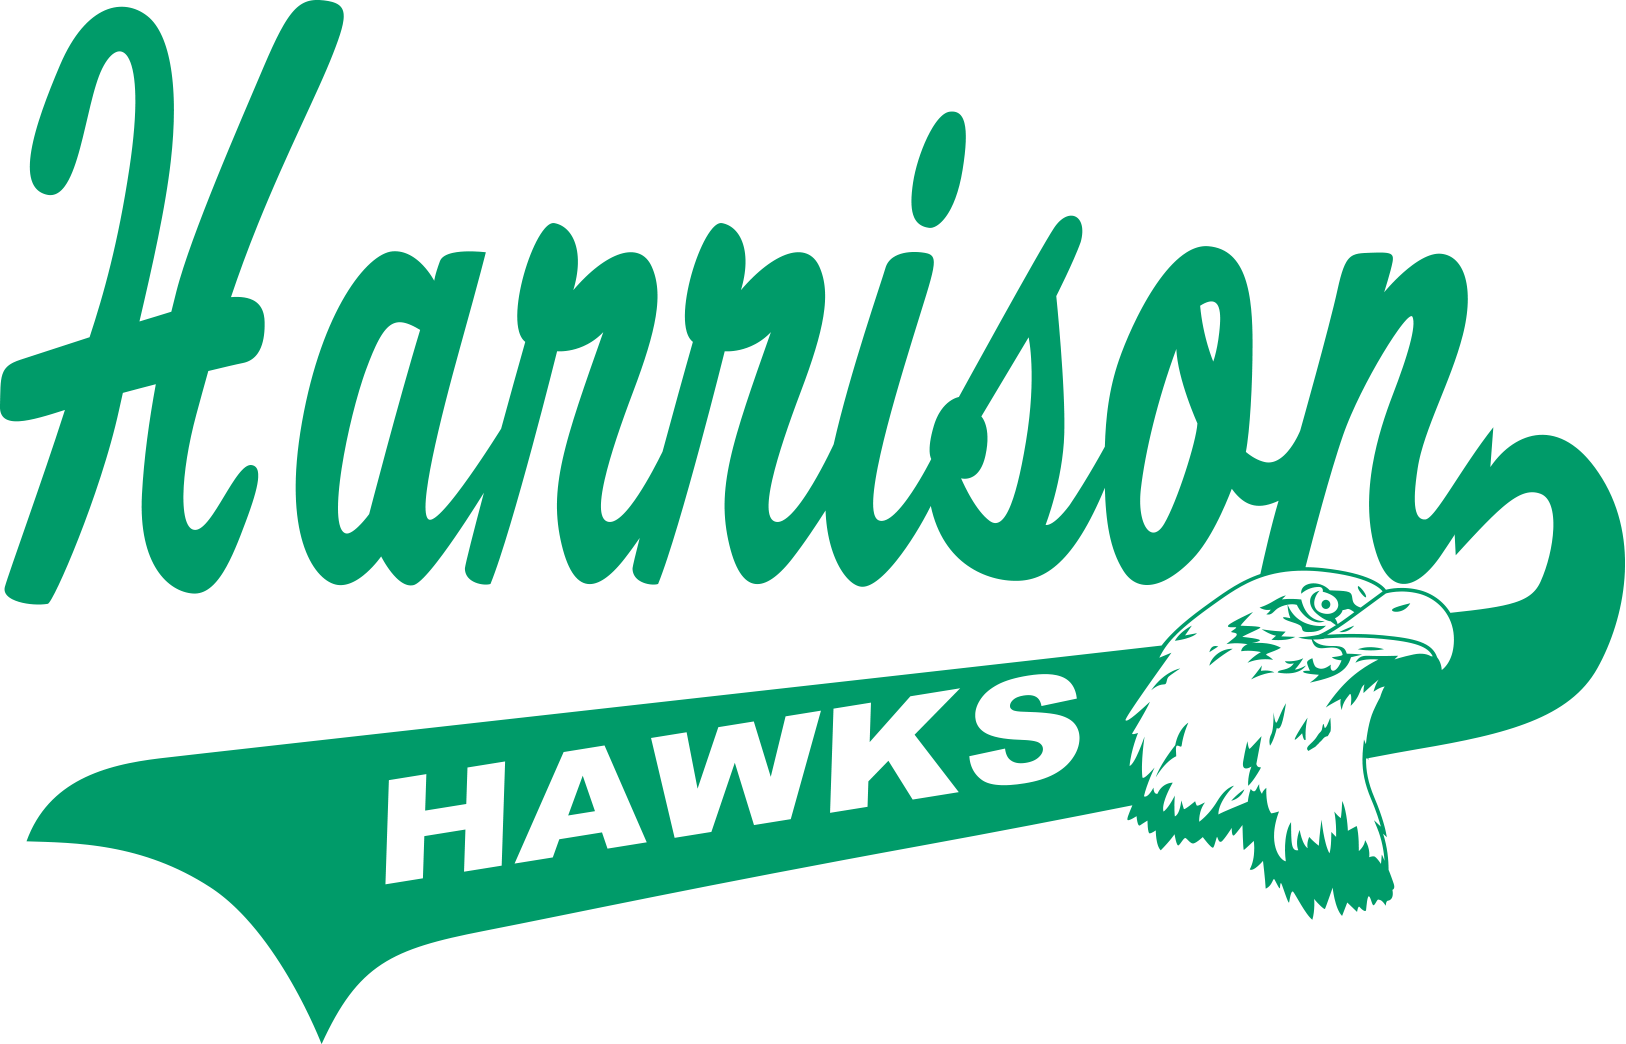 Harrison Hawks Online Store